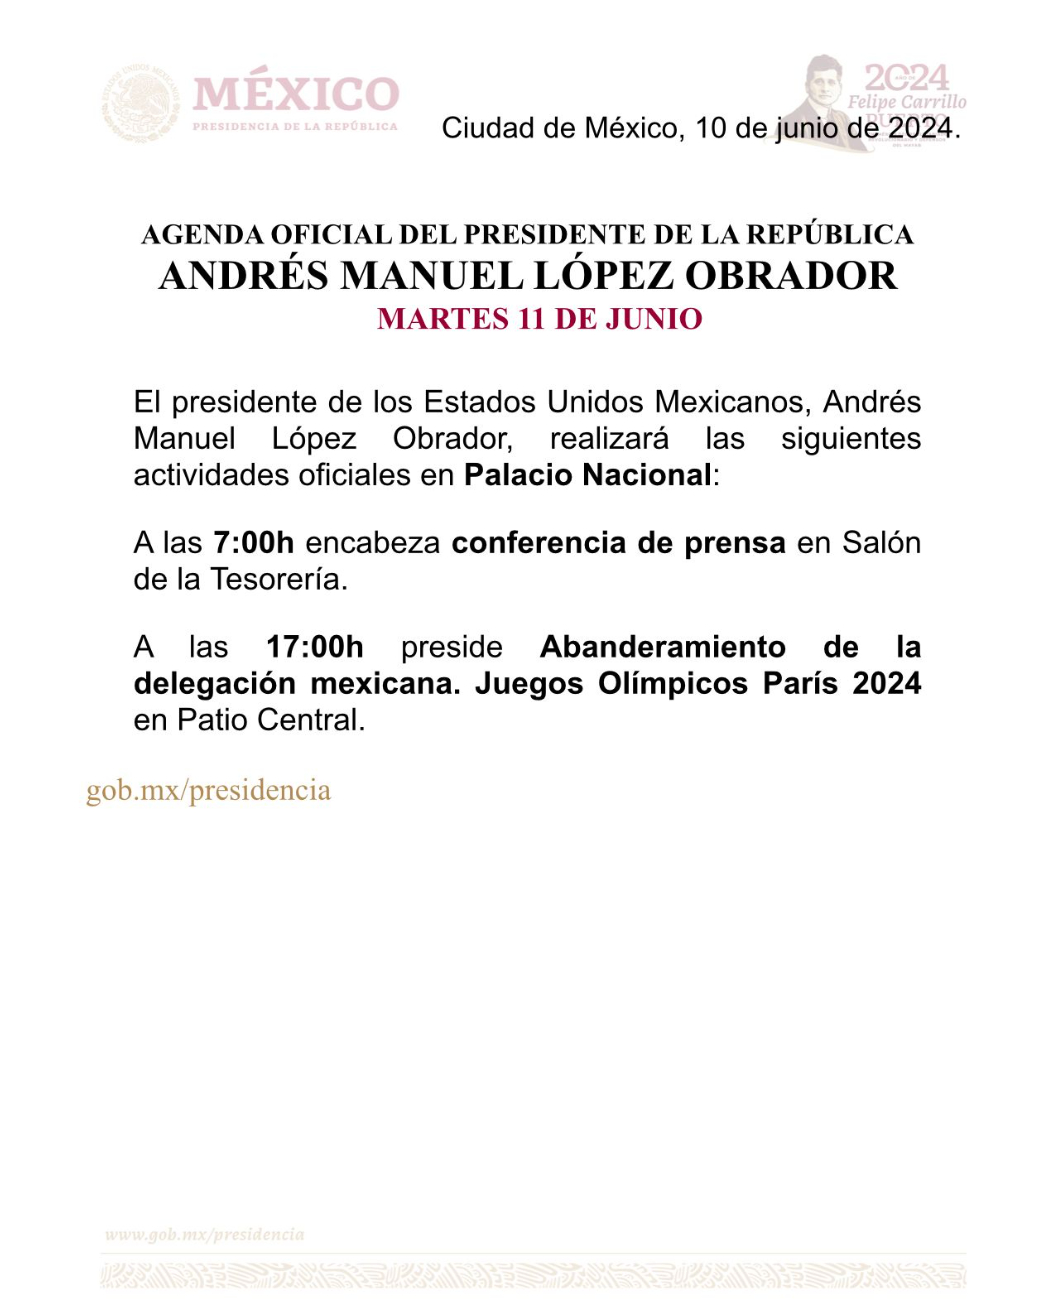 Agenda oficial del presidente Andrés Manuel López Obrador para este martes